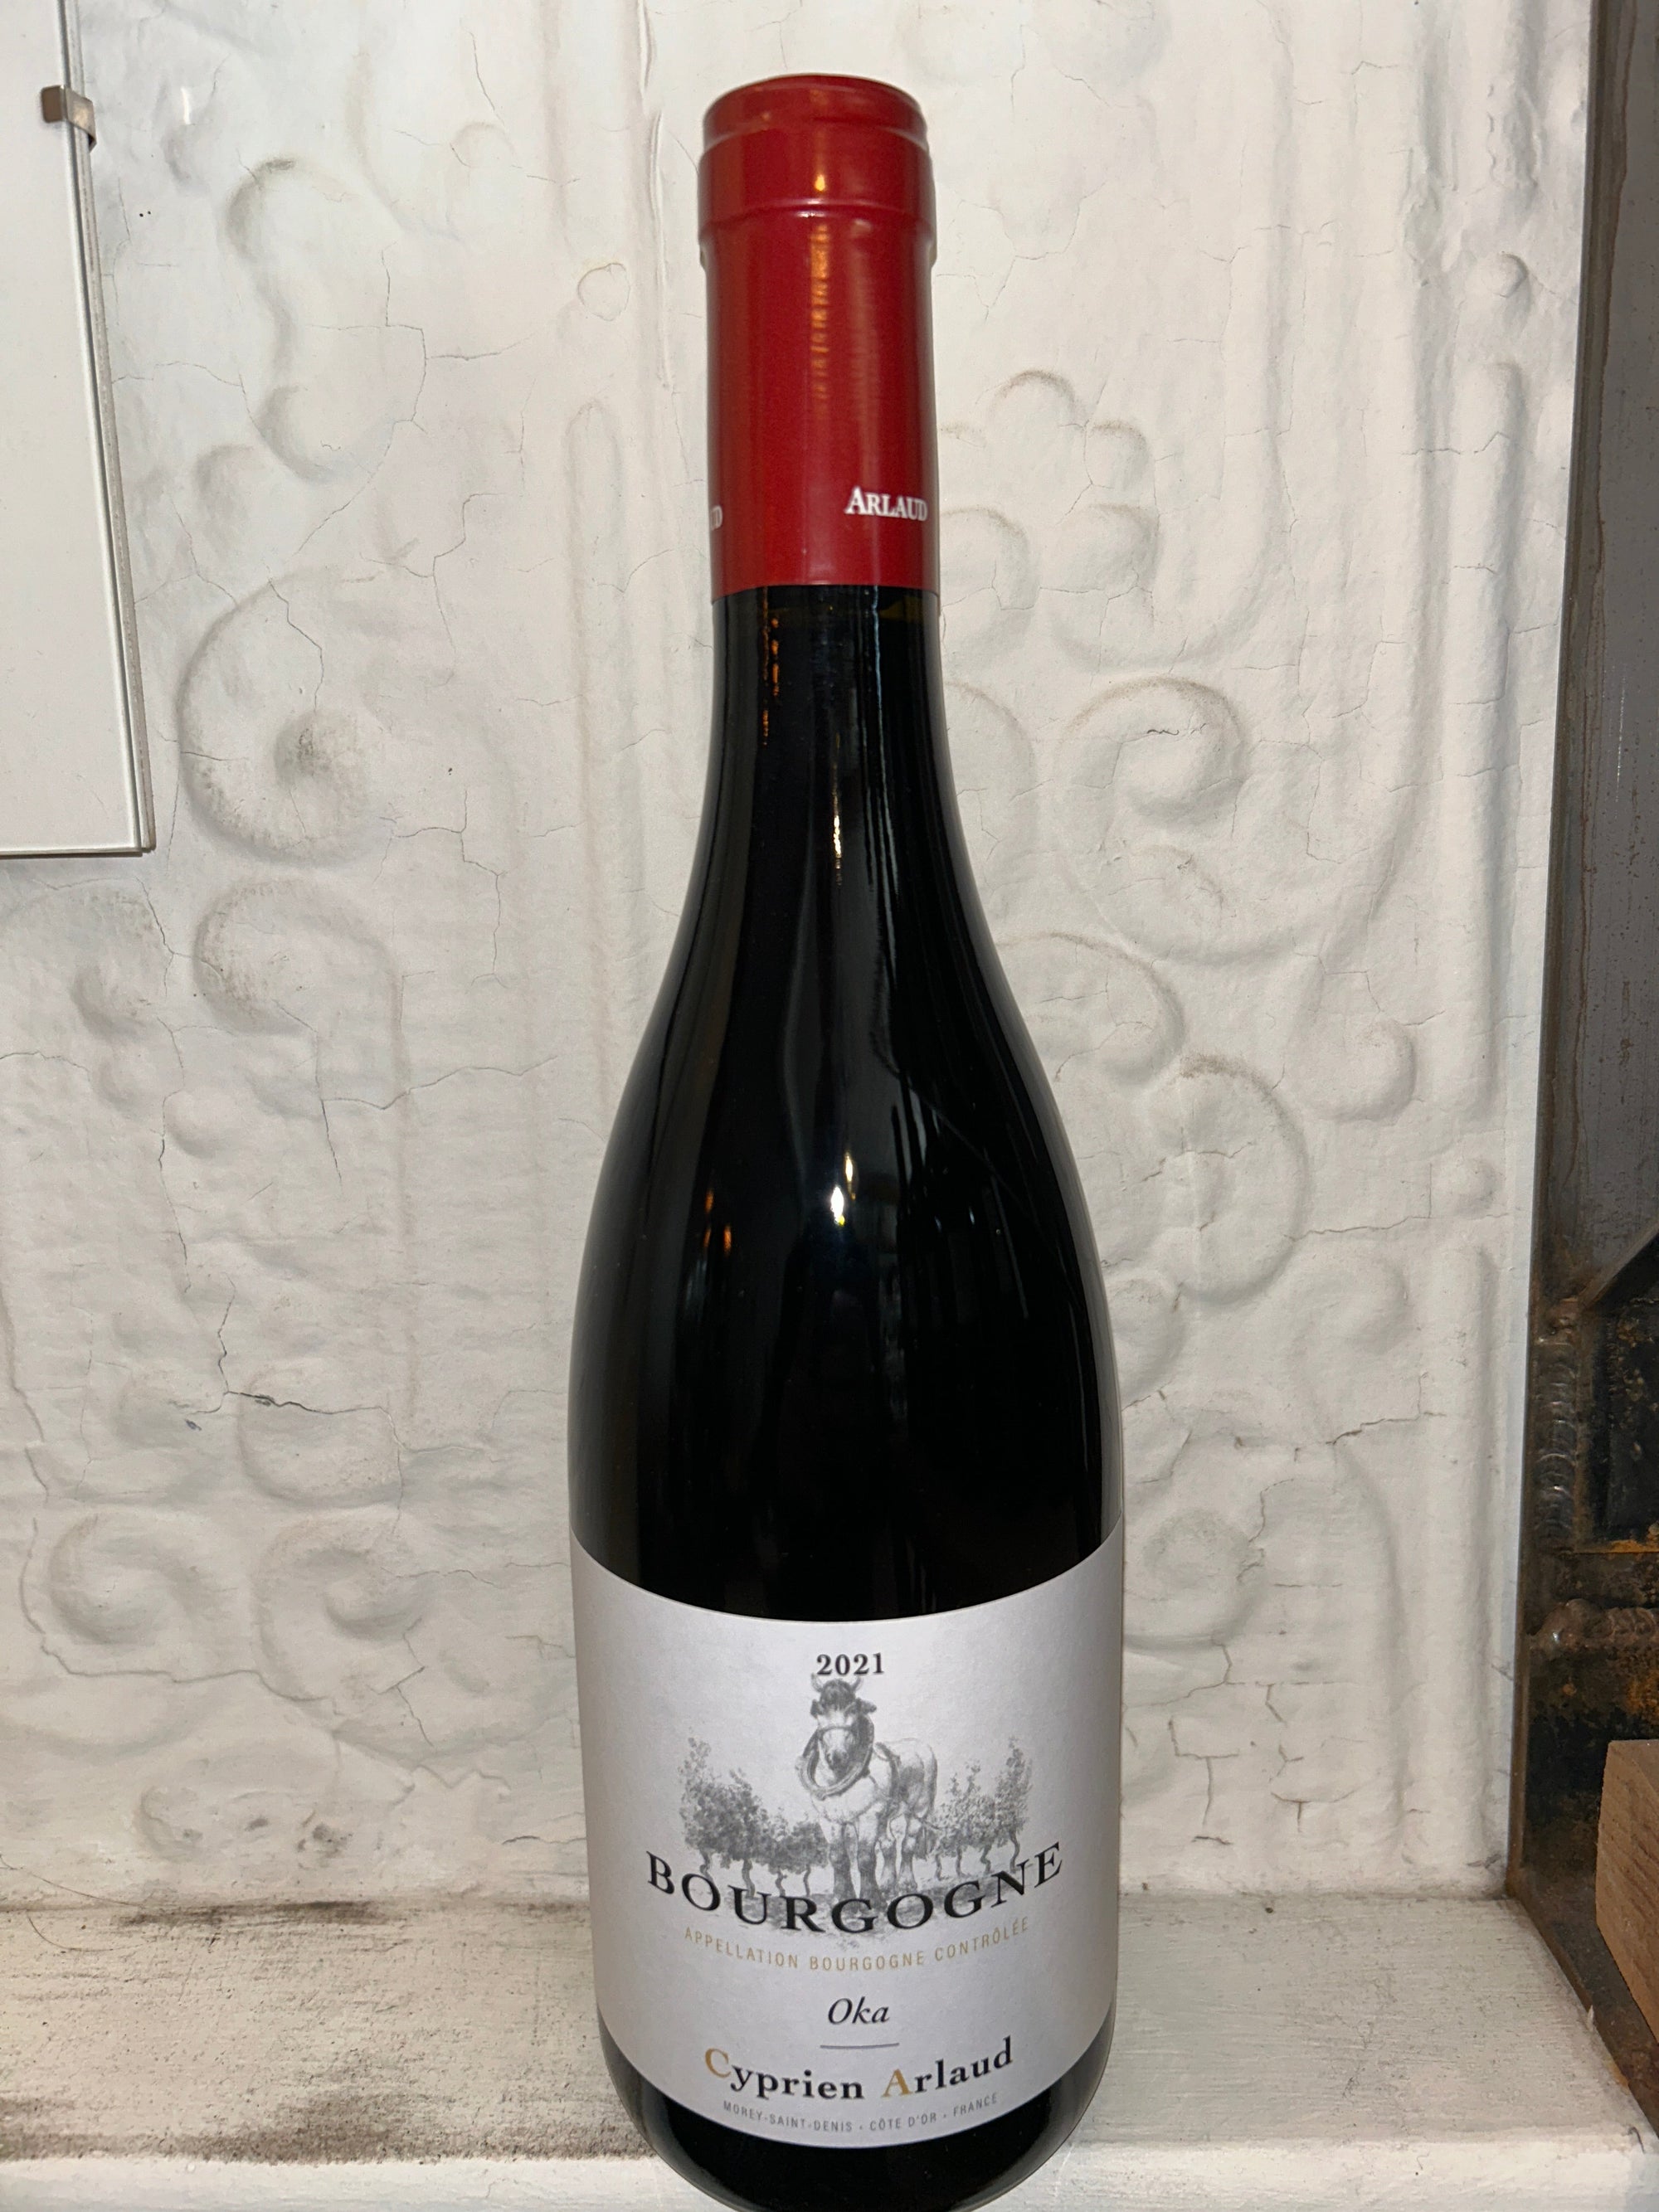 Oka Bourgogne Rouge, Cyprien Arlaud 2021 (Burgundy, France)-Wine-Bibber & Bell